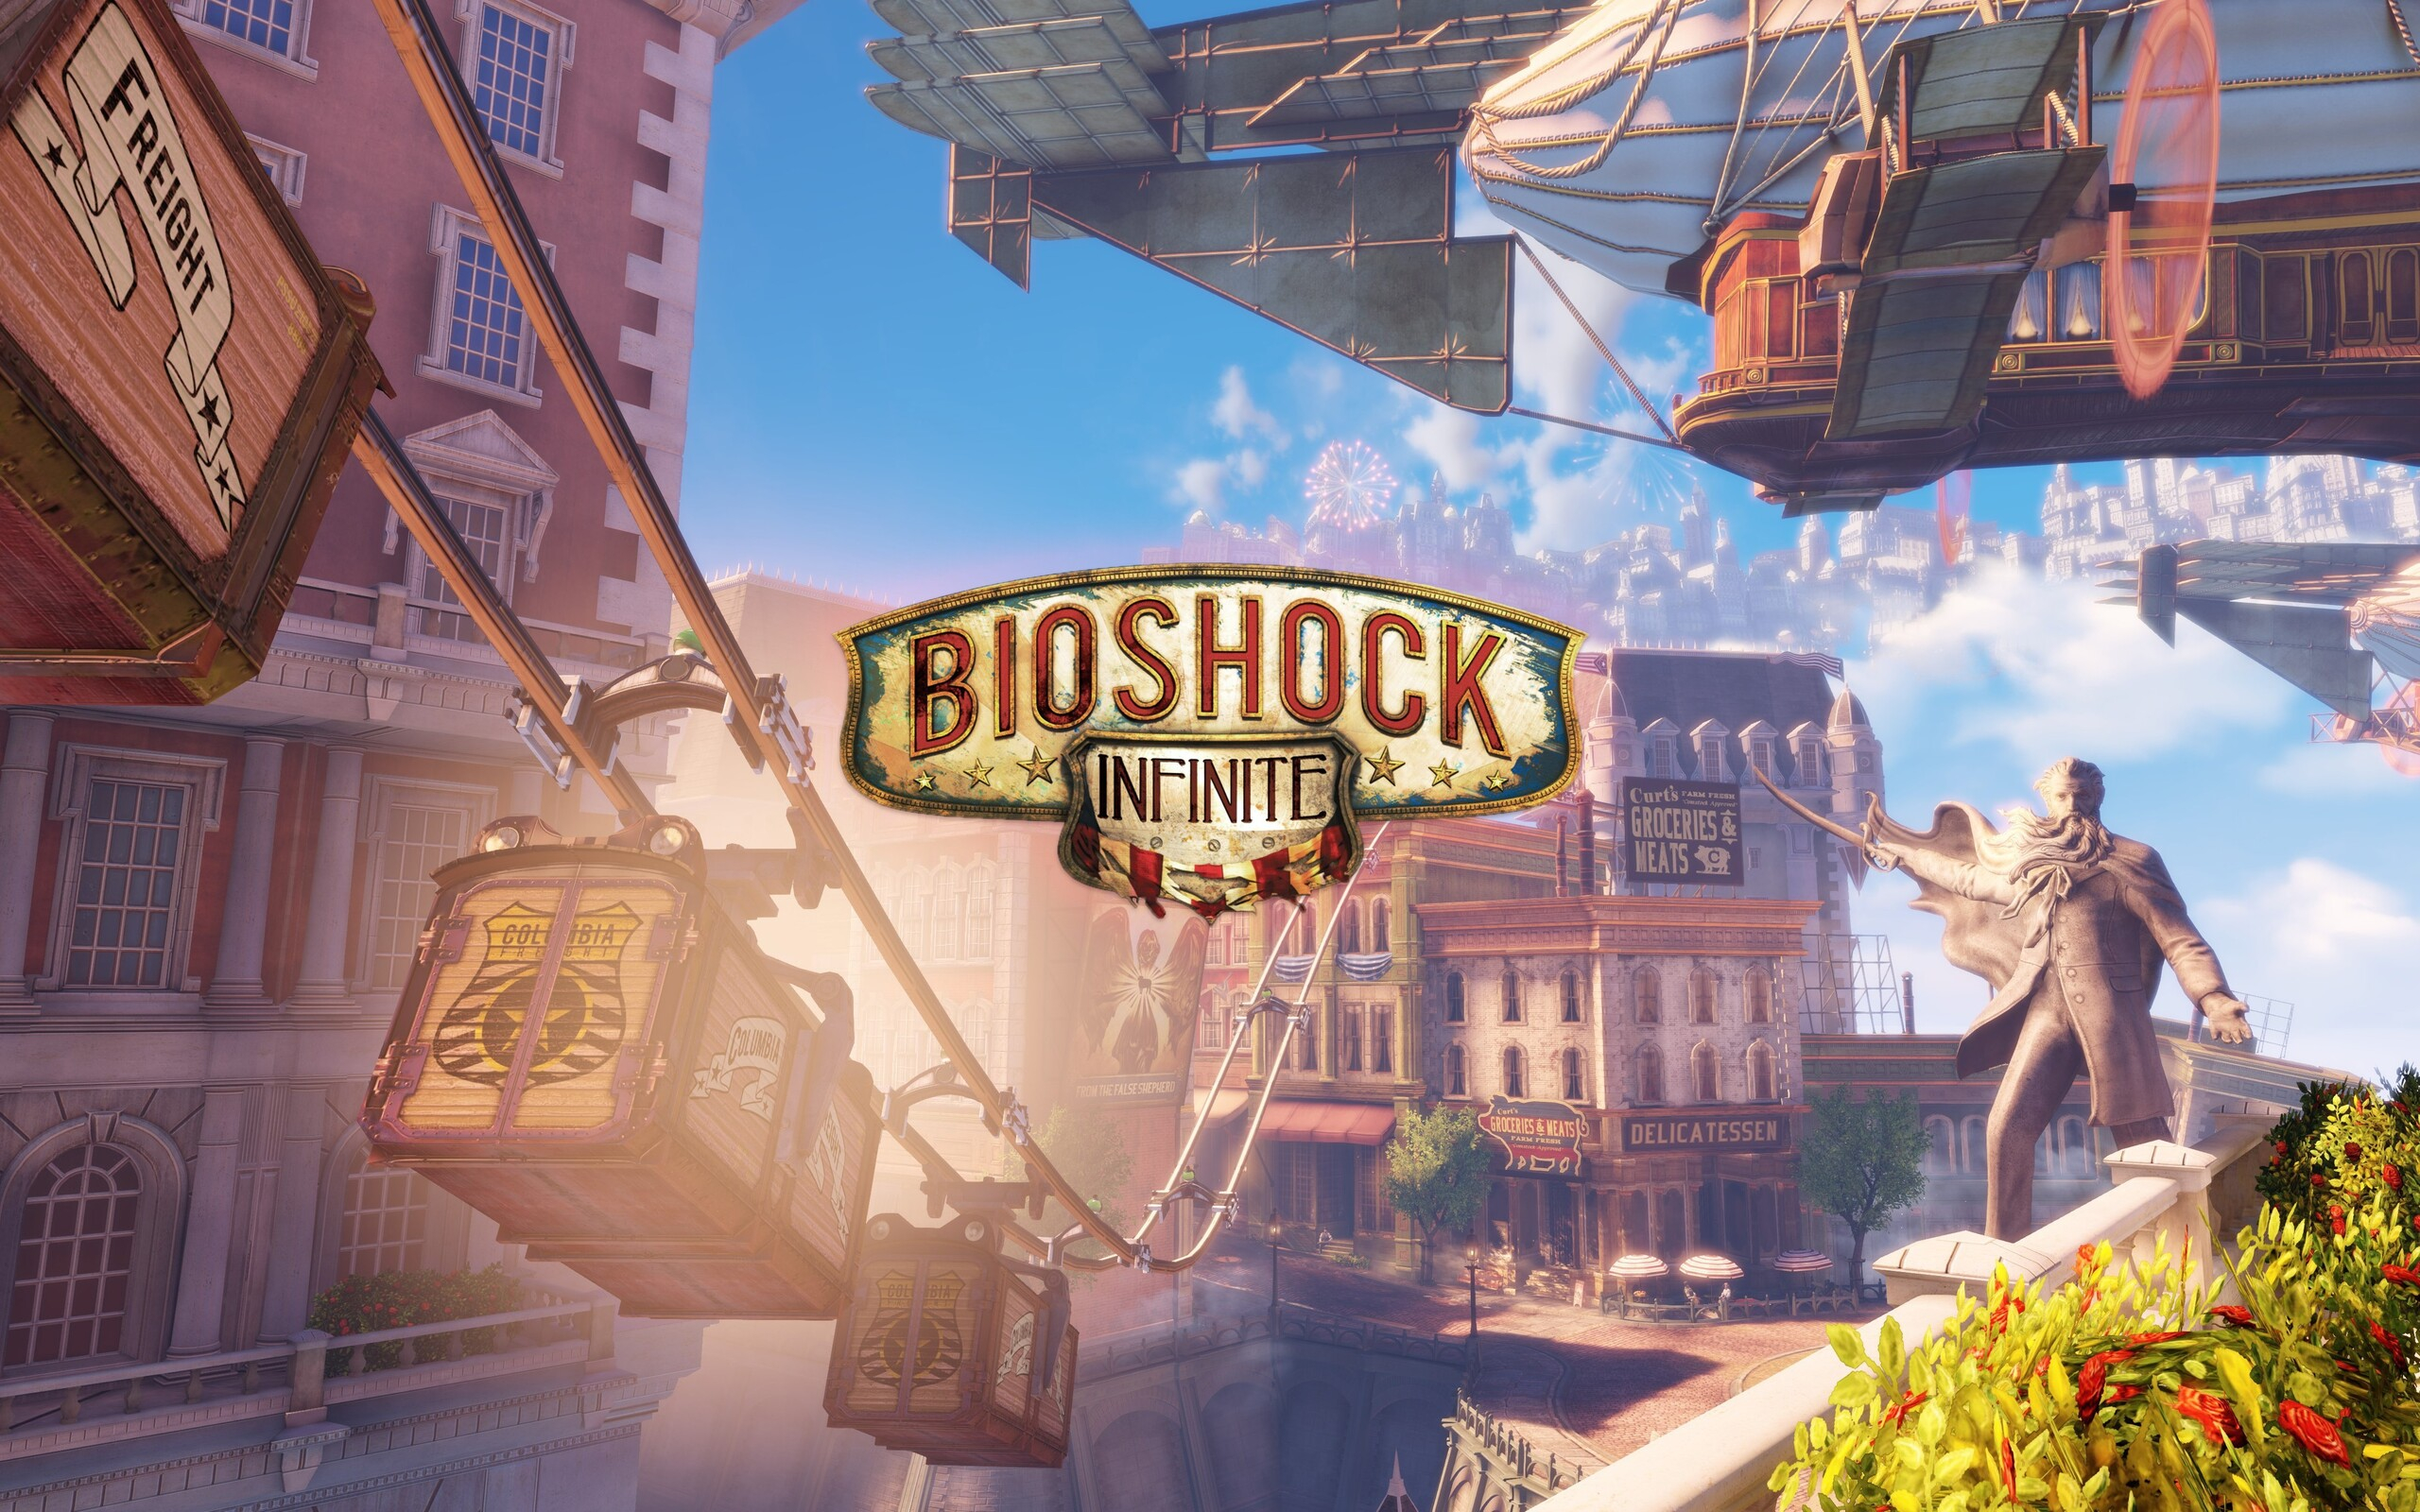 Обложка игры BioShock Infinite